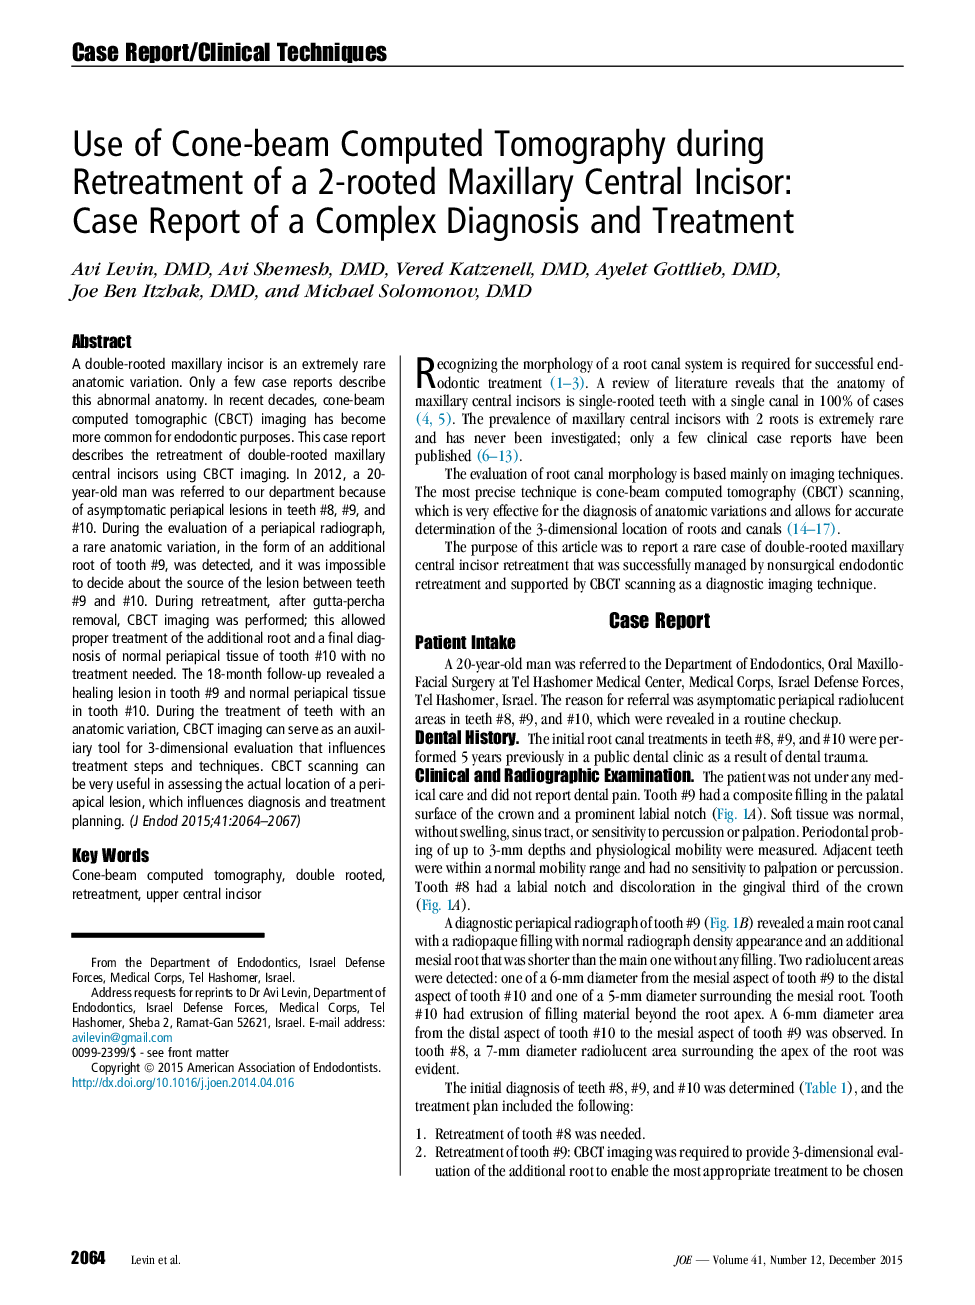 استفاده از توموگرافی کامپوزیتی مخروطی در طی بازداشت دوز ریشه مرکزی ماگزیلاری: گزارش موردی از تشخیص و درمان مجتمع 